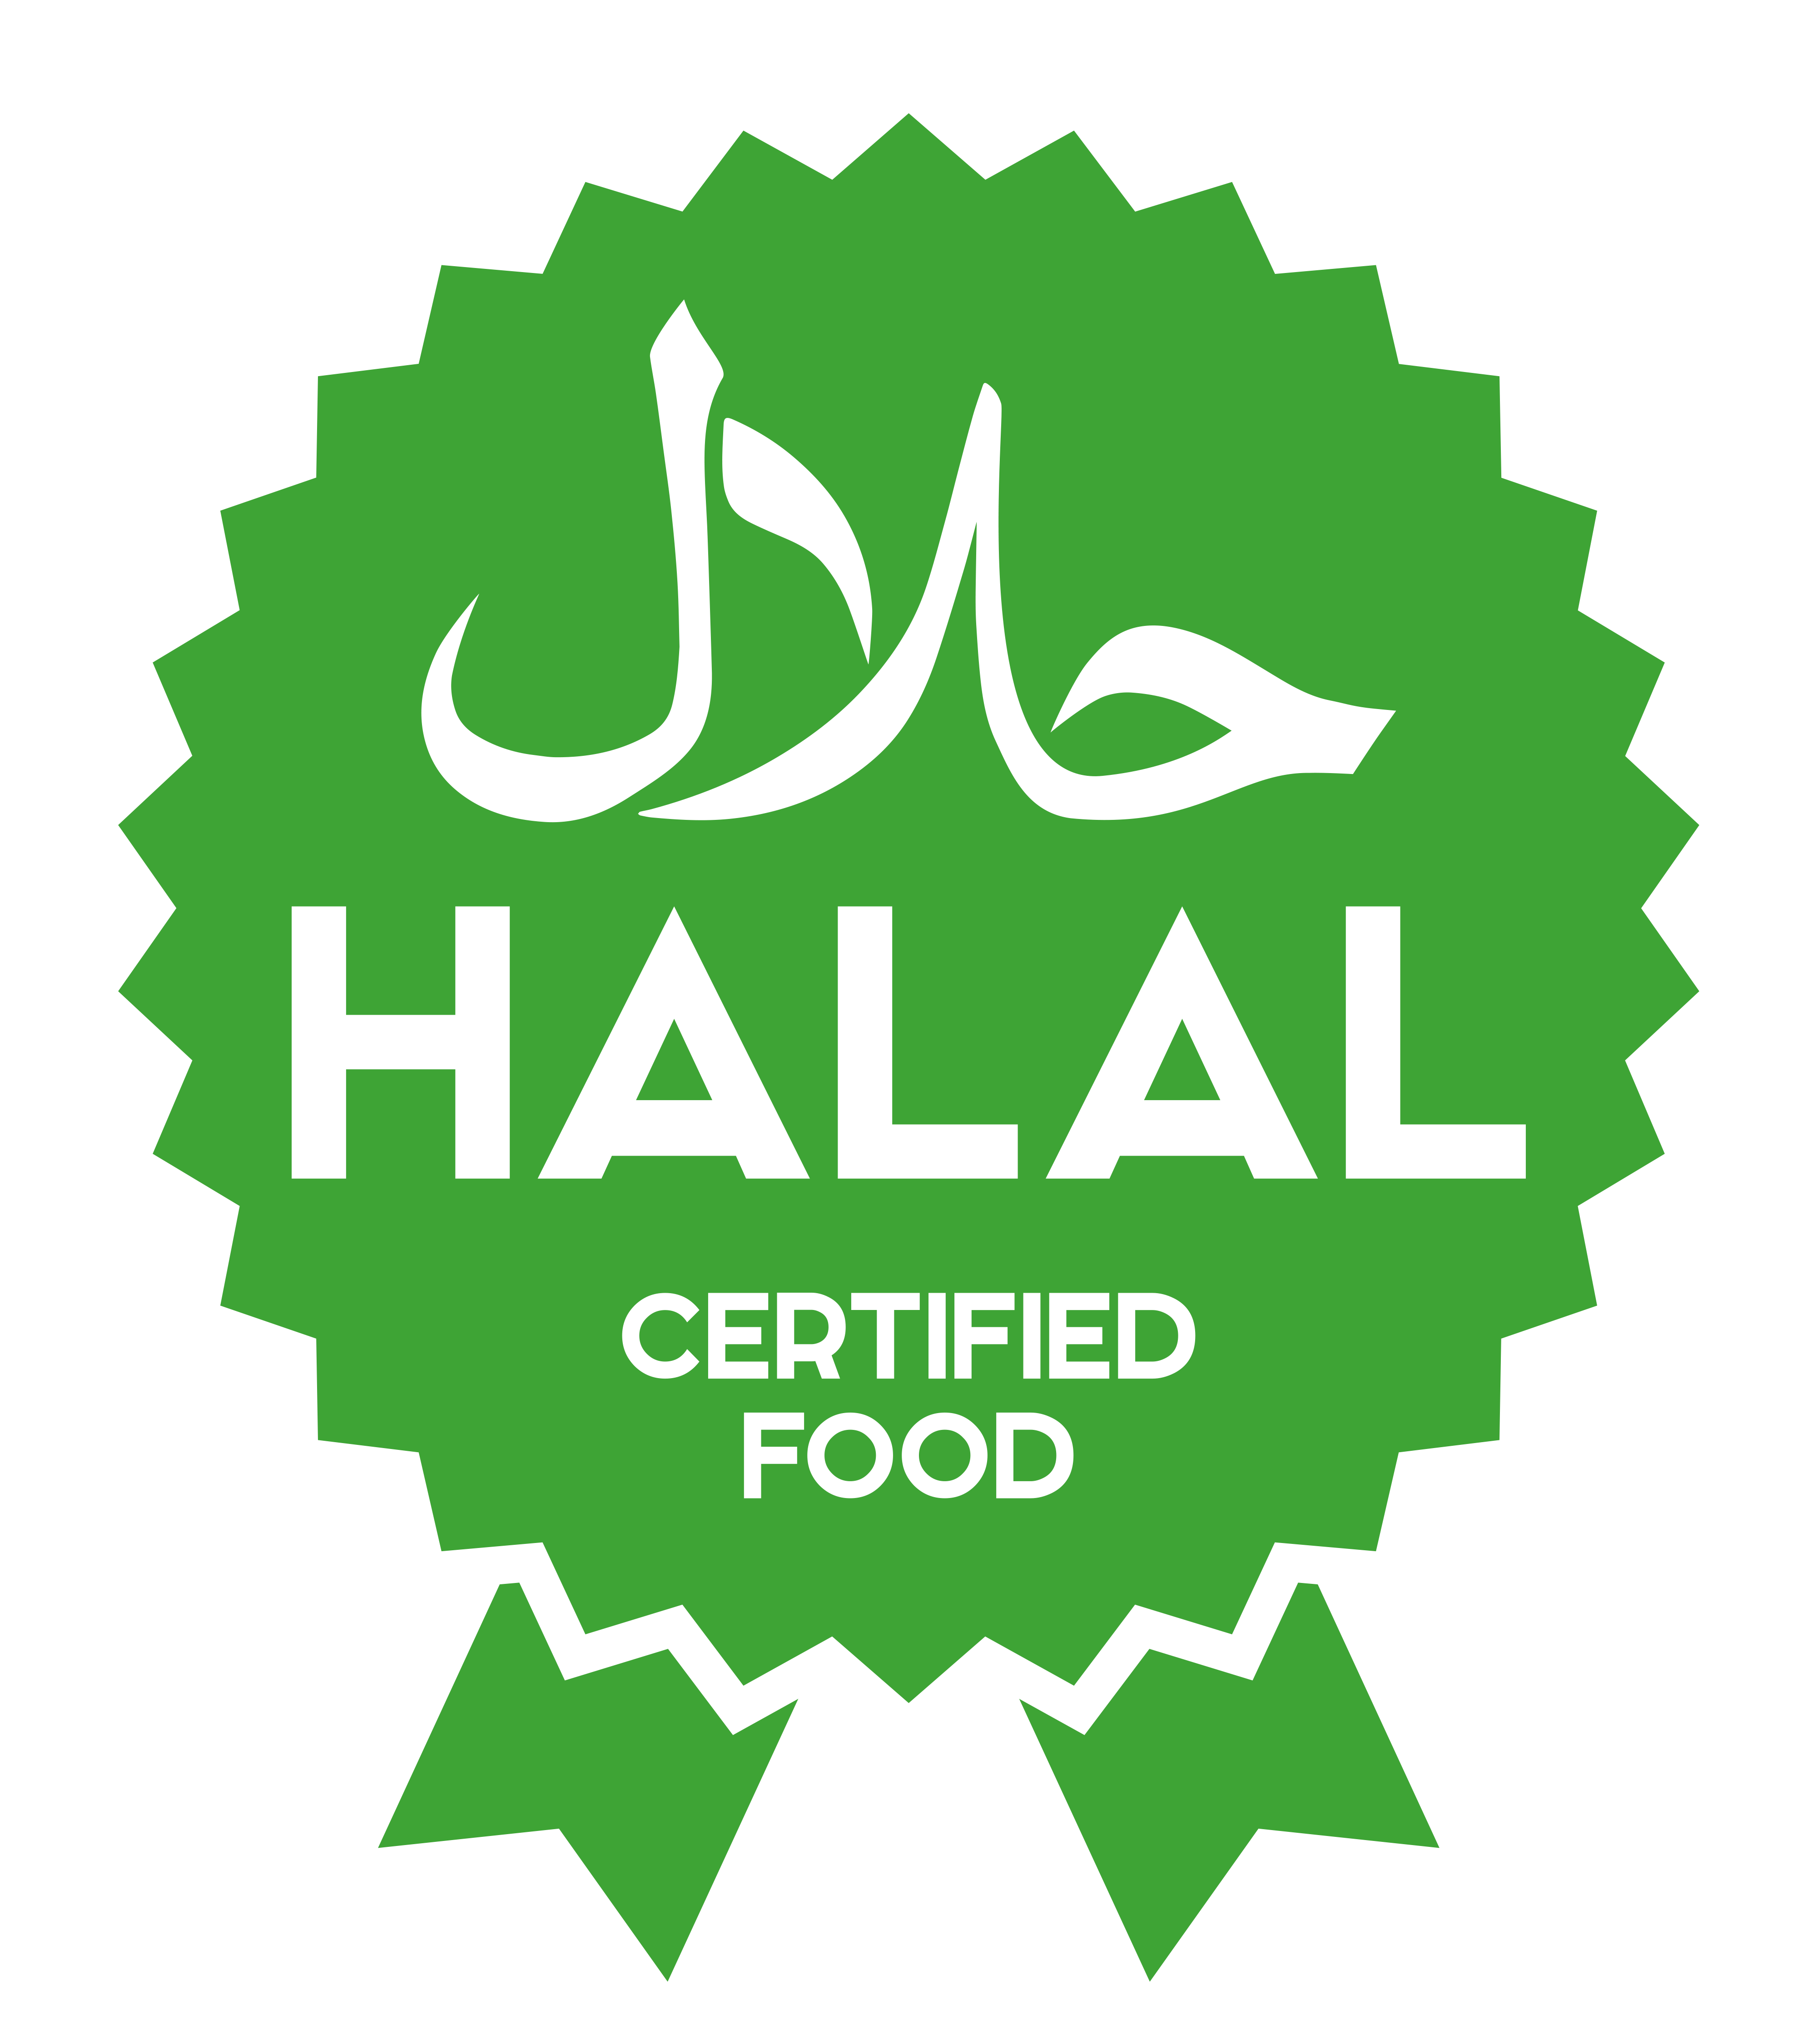 Halal Food - Helal Food